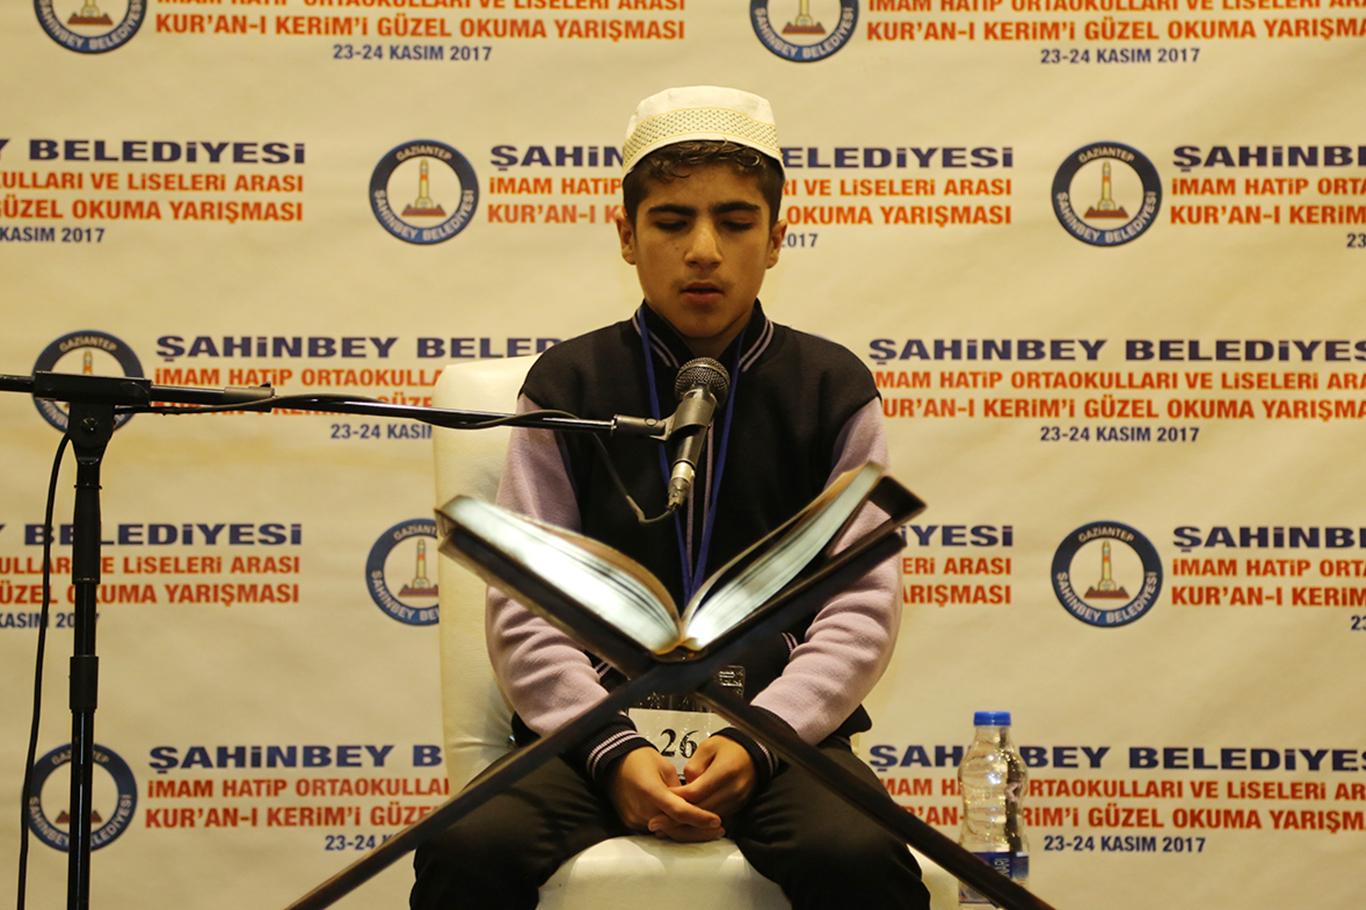 Gaziantep’te Kur’an-ı Kerim’i güzel okuma yarışması